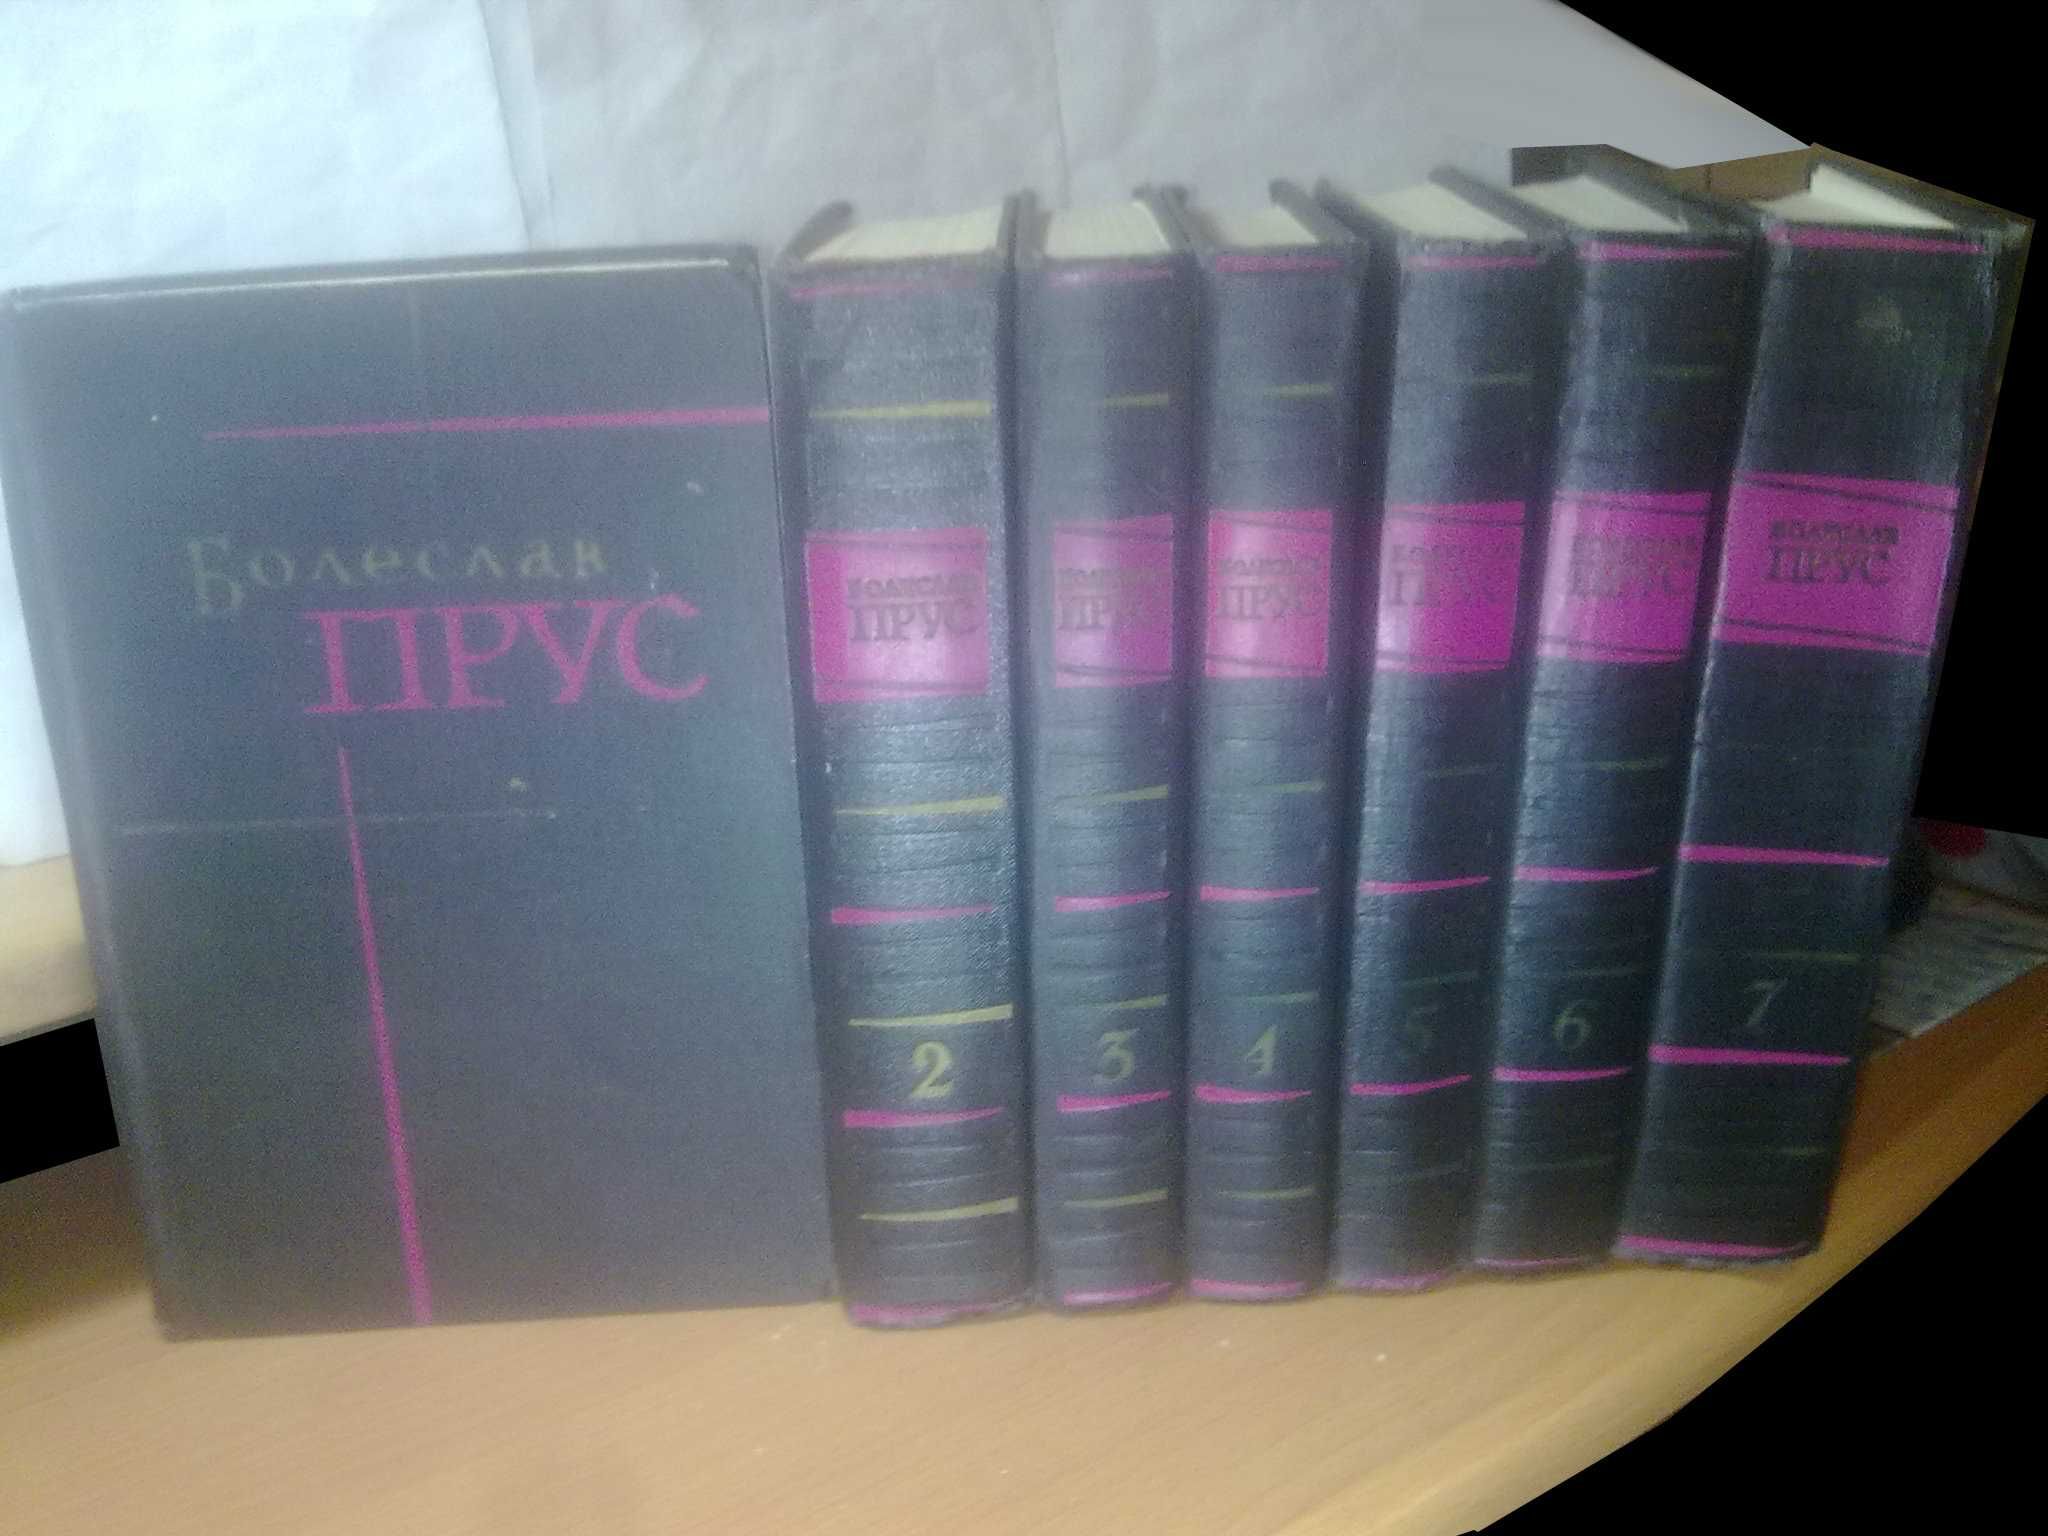 Прус Болеслав. Собрание сочинений в 7 и 5 томах. 1955 и 1961 гг